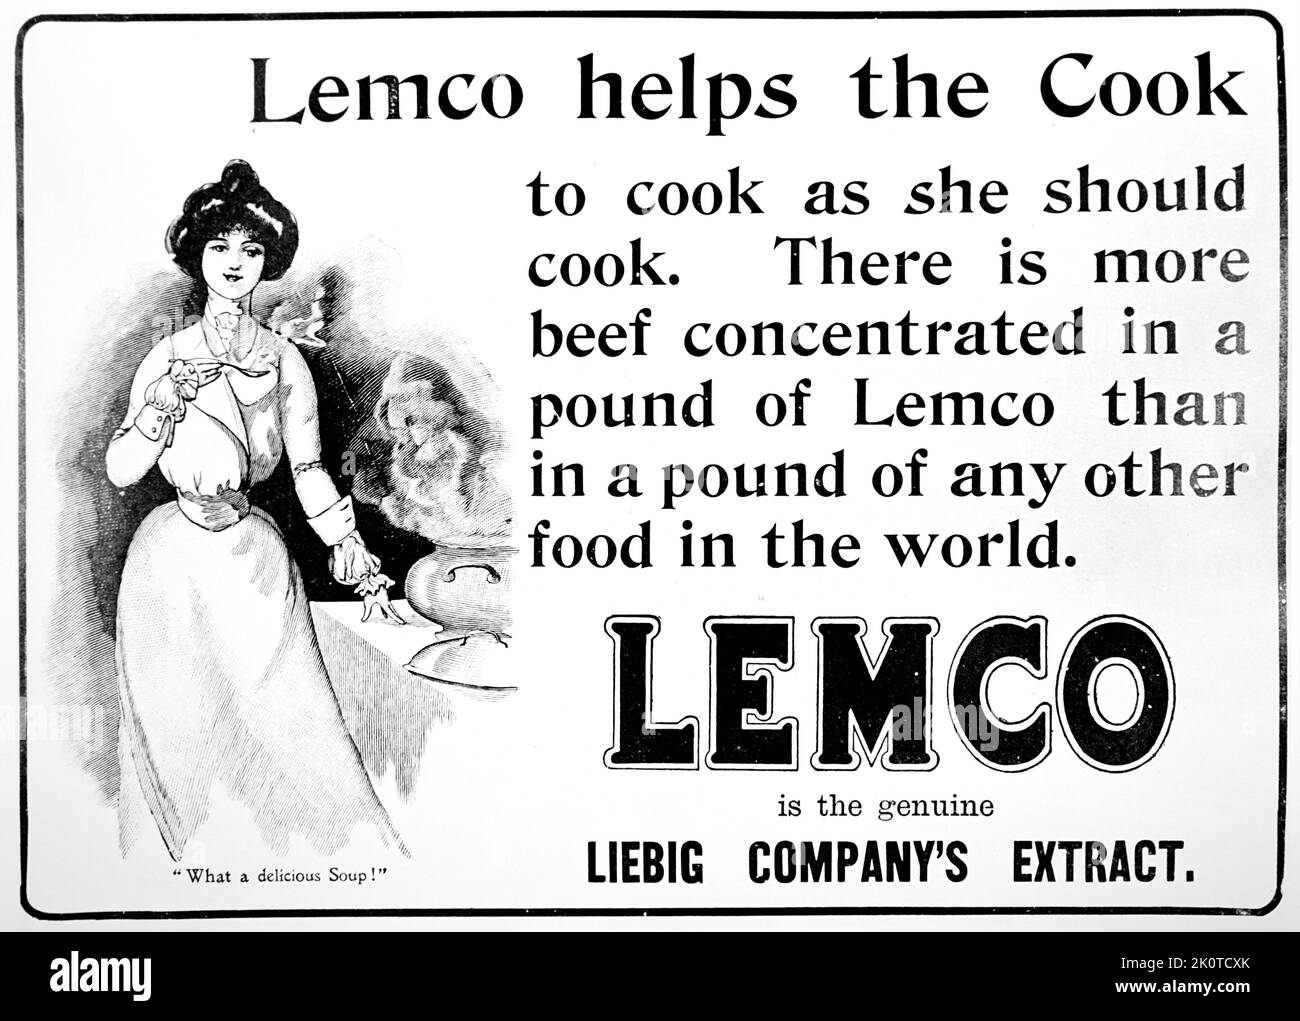 Leibig-Werbung für „Lemco“-Lebensmittelextrakt zum Kochen. 1880 Stockfoto